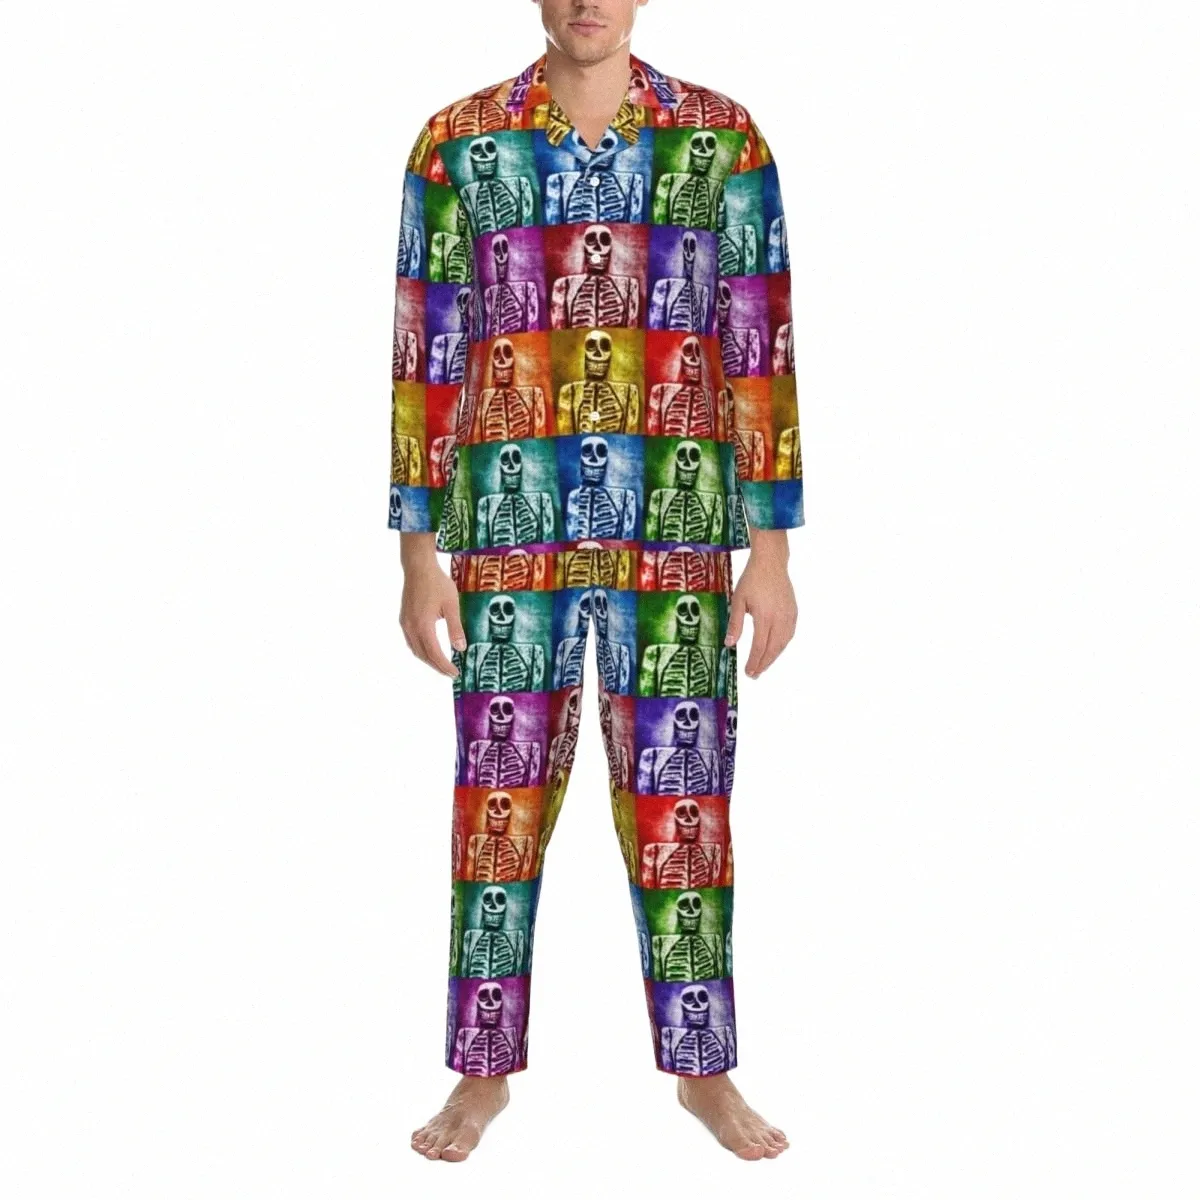 Coloré Skelet Pyjama Set Pop Art Imprimer Confortable Vêtements De Nuit Hommes Lg-Sleeve Casual Chambre Deux Pièces De Nuit Plus La Taille j9fh #